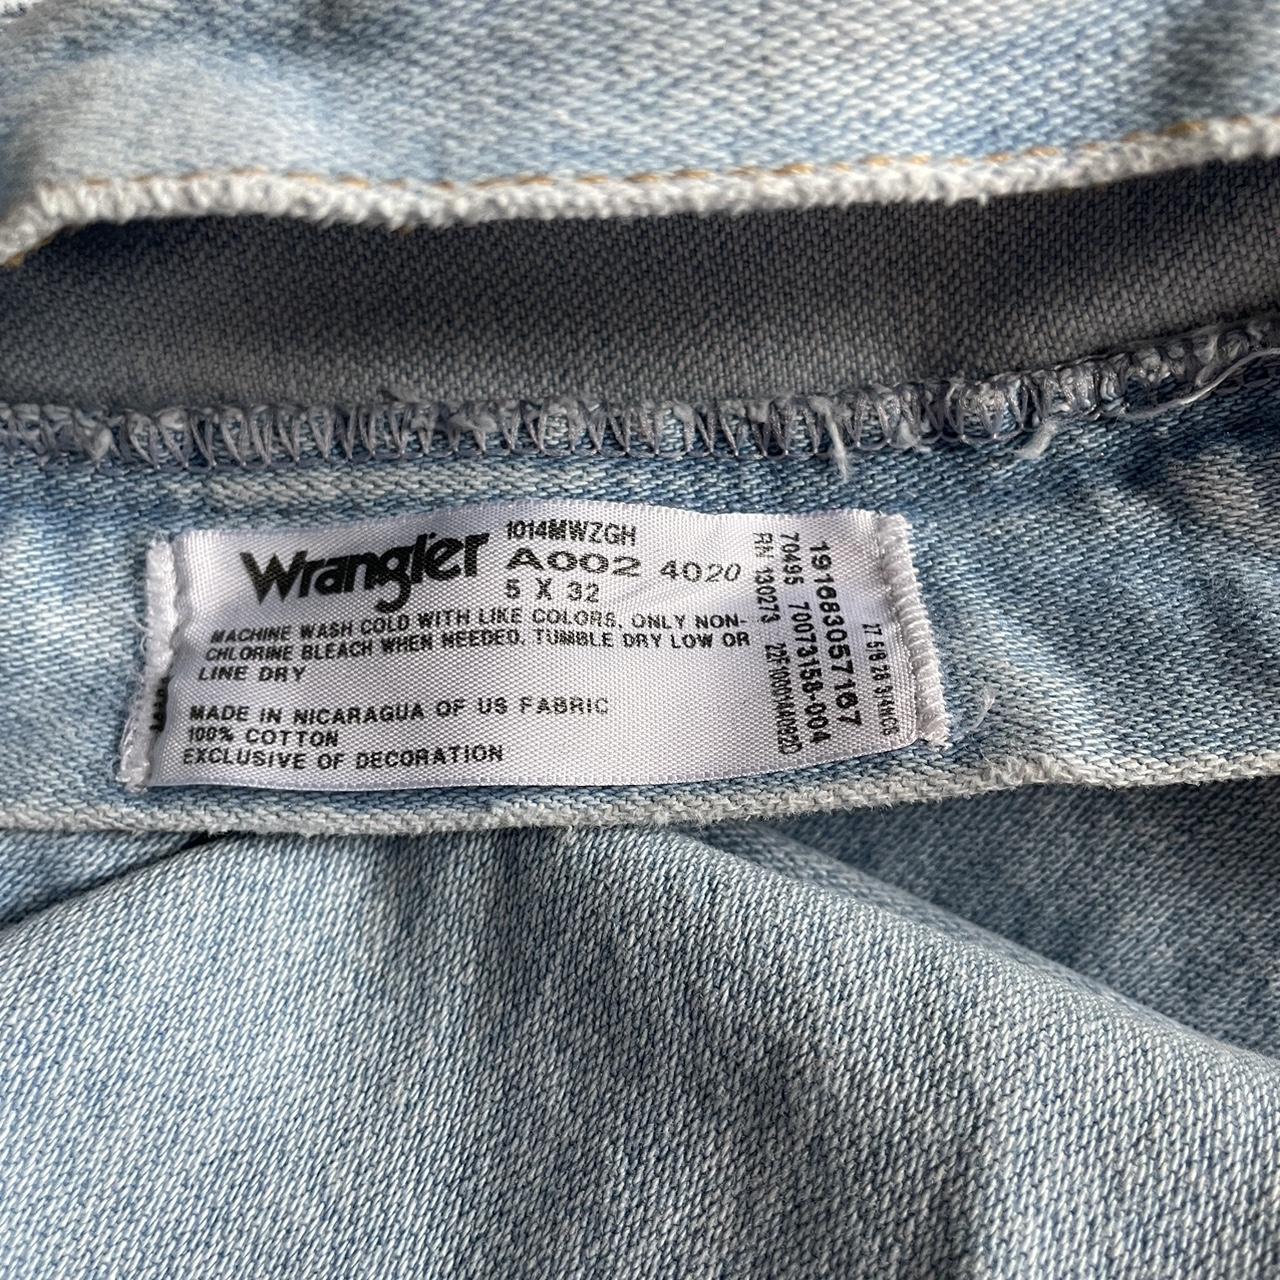 Light wash Vintage Wrangler Jeans - small... - Depop